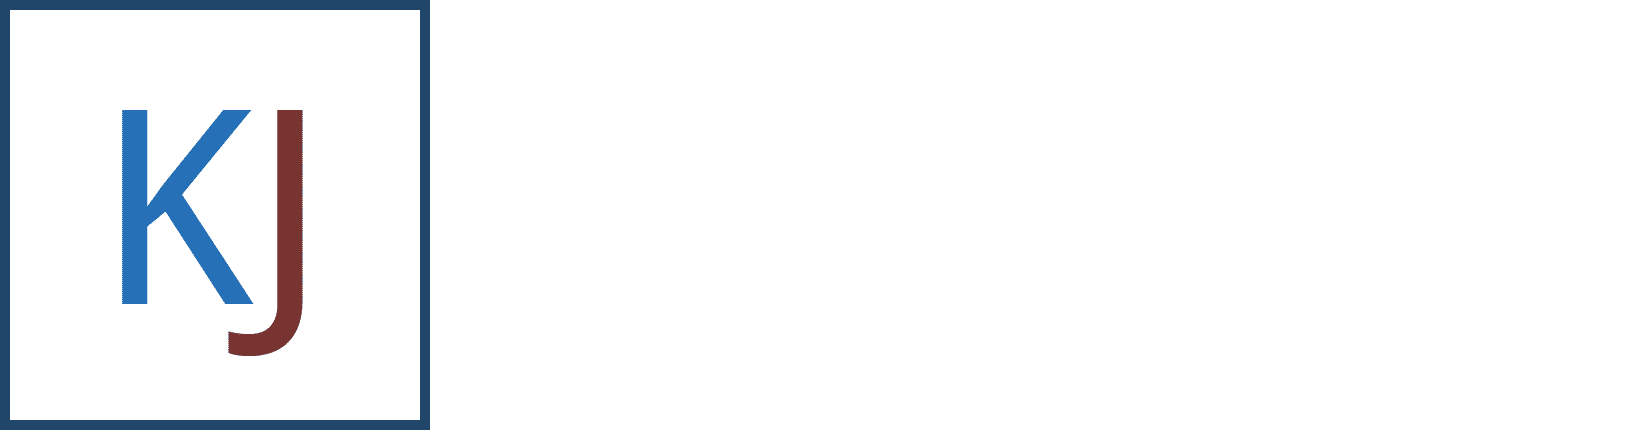 Kevin Johnson Plumbing & Heating